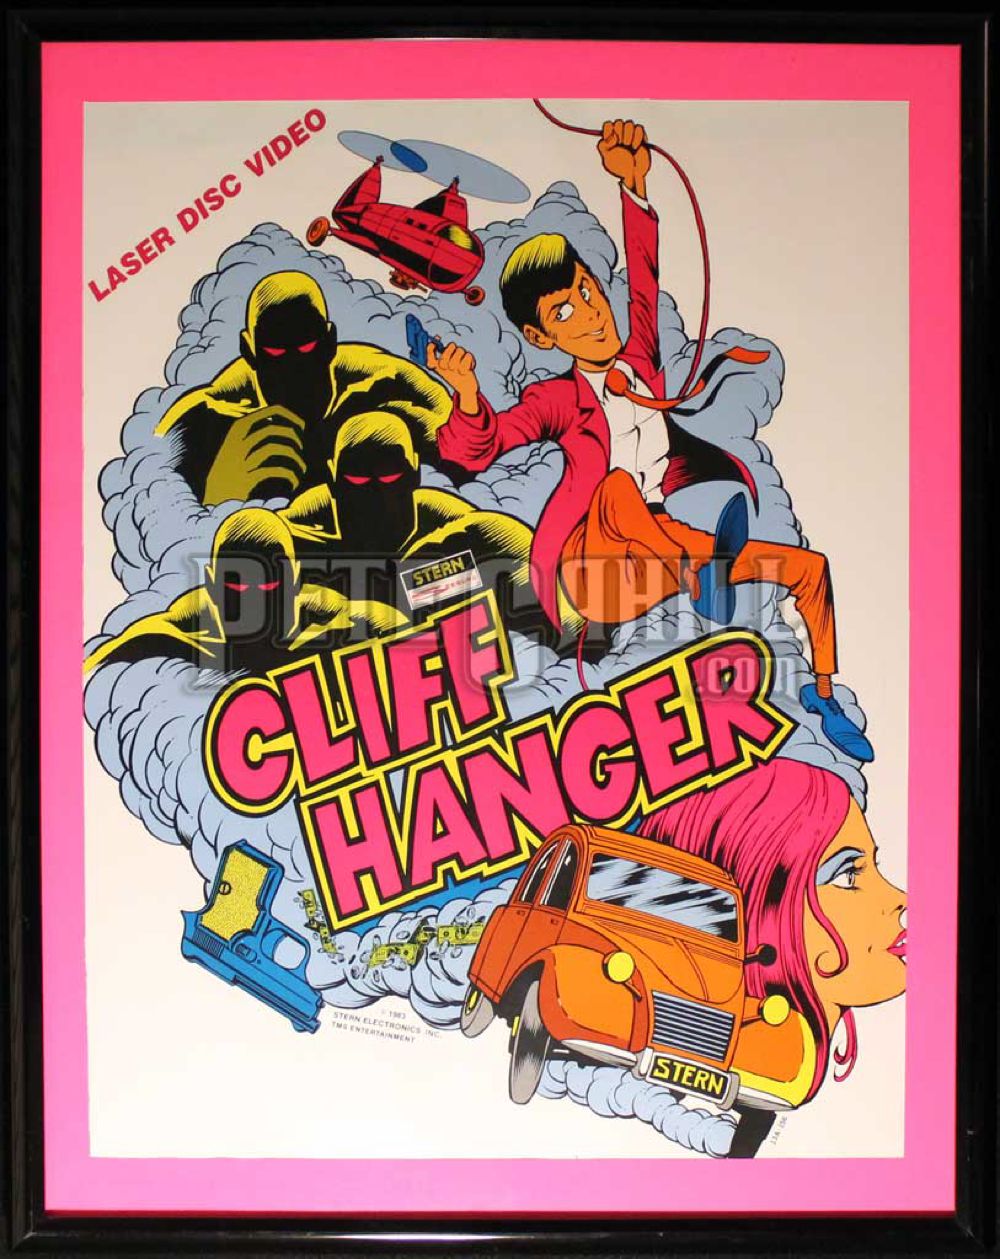 Cliff Hanger, il videogioco di Lupin III che (forse) non conoscevate